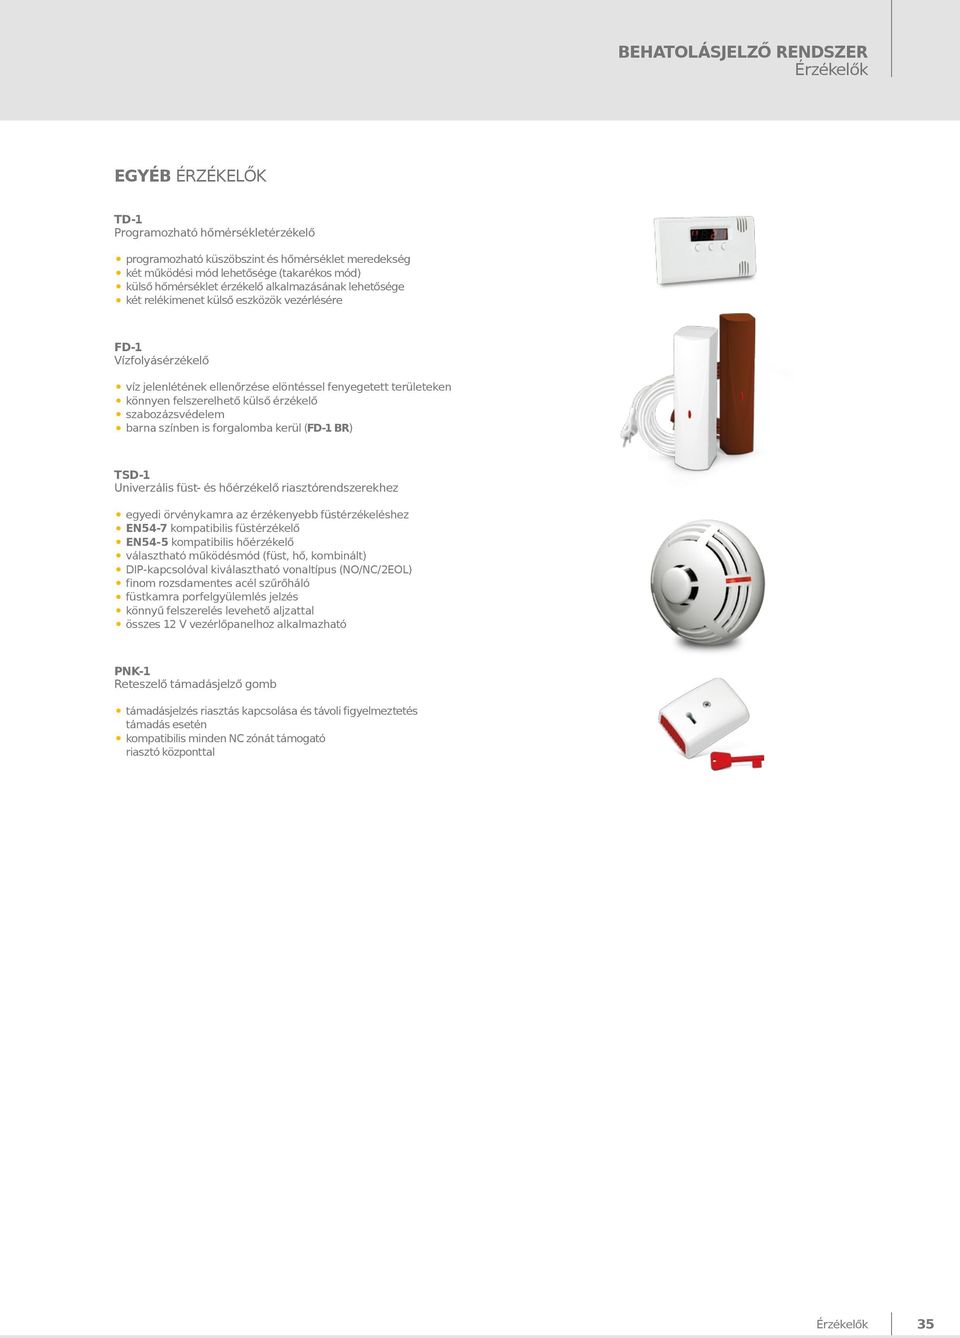 érzékelő szabozázsvédelem barna színben is forgalomba kerül (FD-1 BR) TSD-1 Univerzális füst- és hőérzékelő riasztórendszerekhez egyedi örvénykamra az érzékenyebb füstérzékeléshez EN54-7 kompatibilis